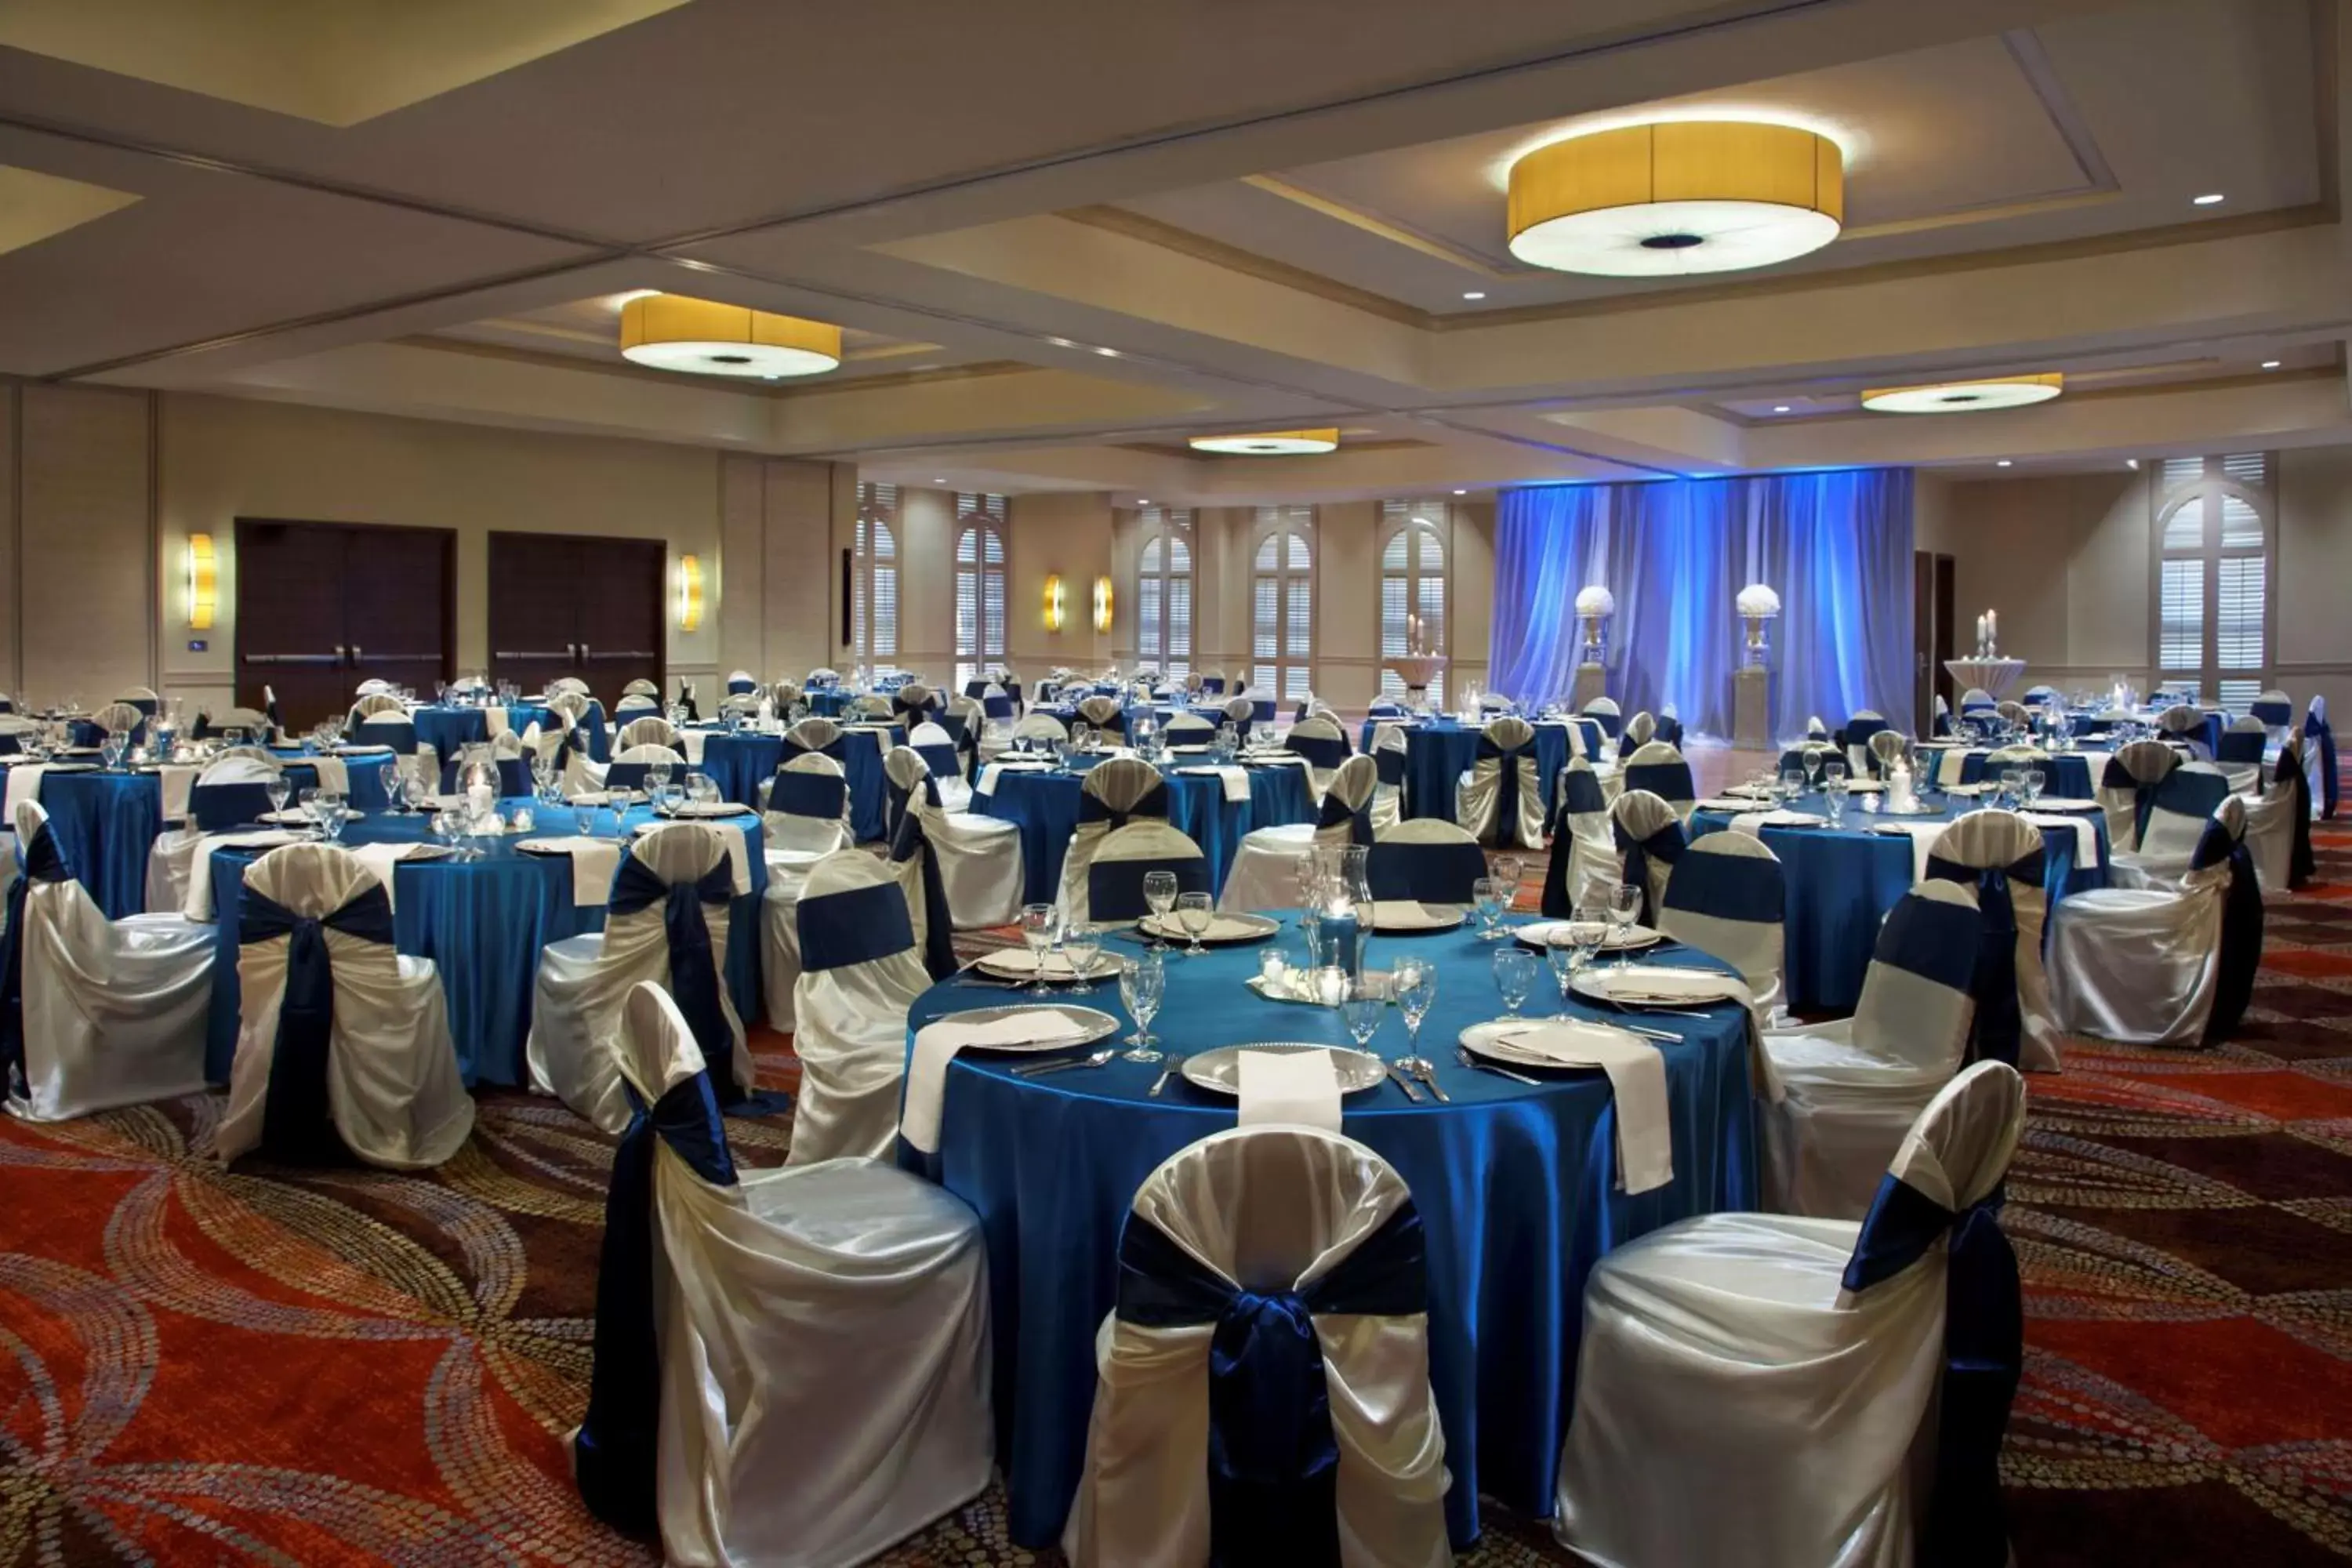 Meeting/conference room, Banquet Facilities in Hilton Palacio del Rio